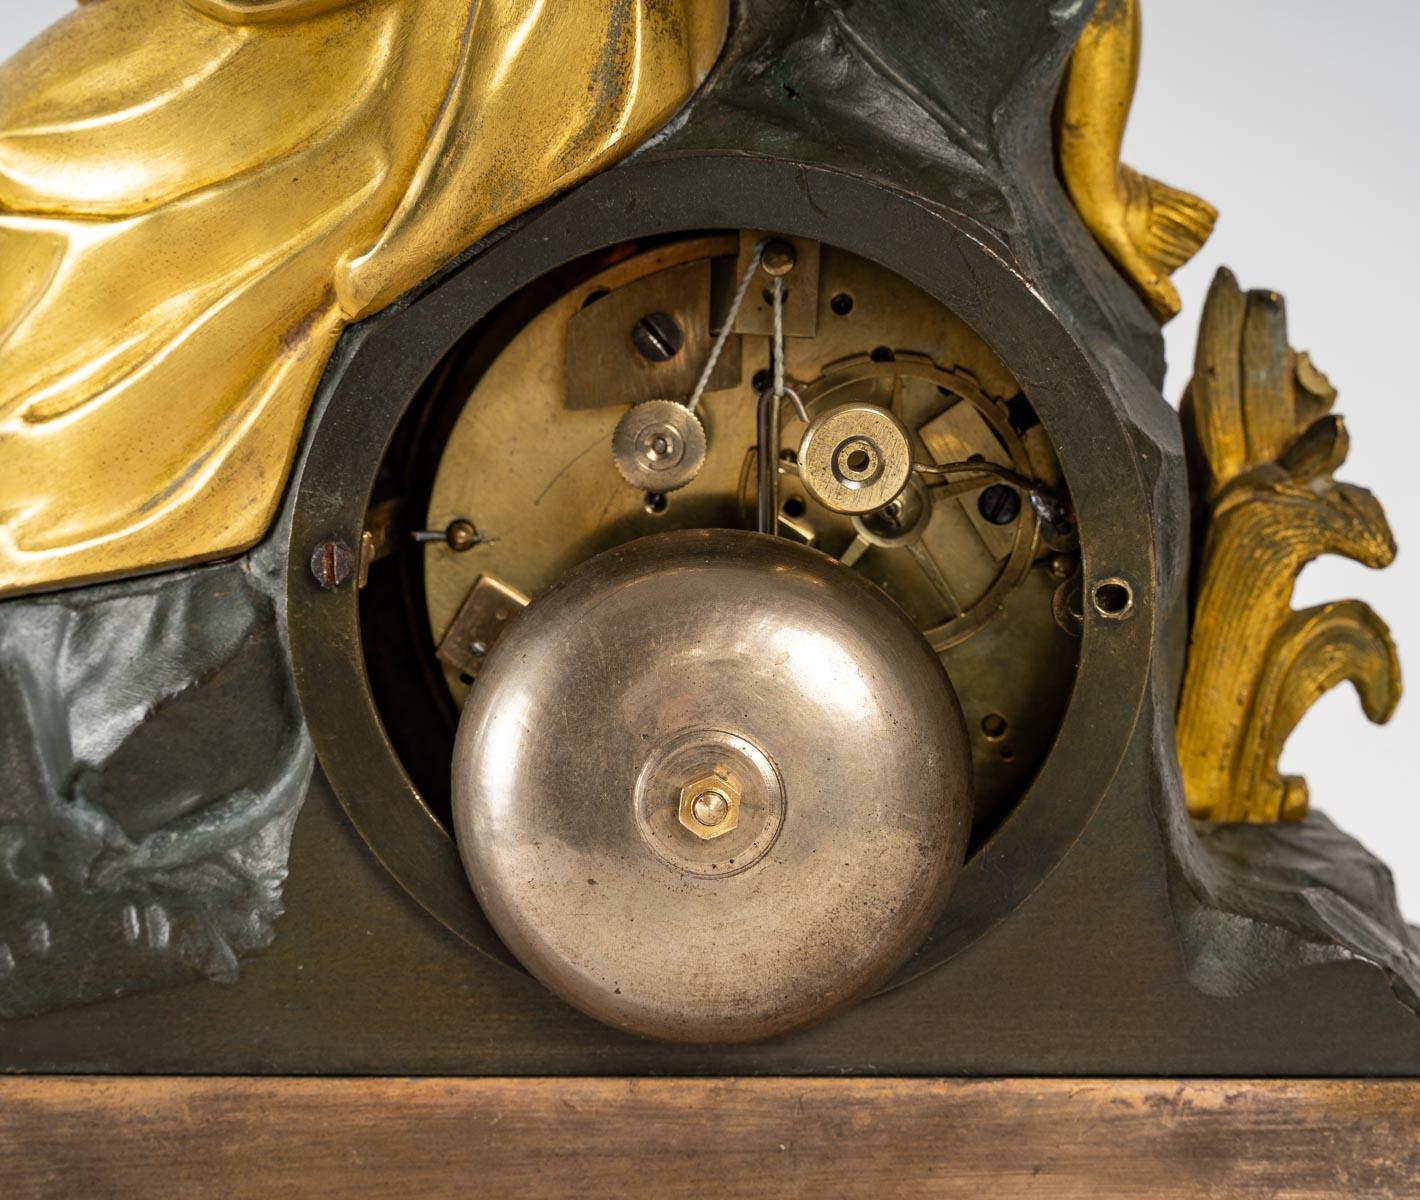 Horloge en bronze doré et patiné, période Napoléon III, XIXe siècle.
en bon état de fonctionnement
Mesures : H : 38 cm, L : 28 cm, P : 8 cm.